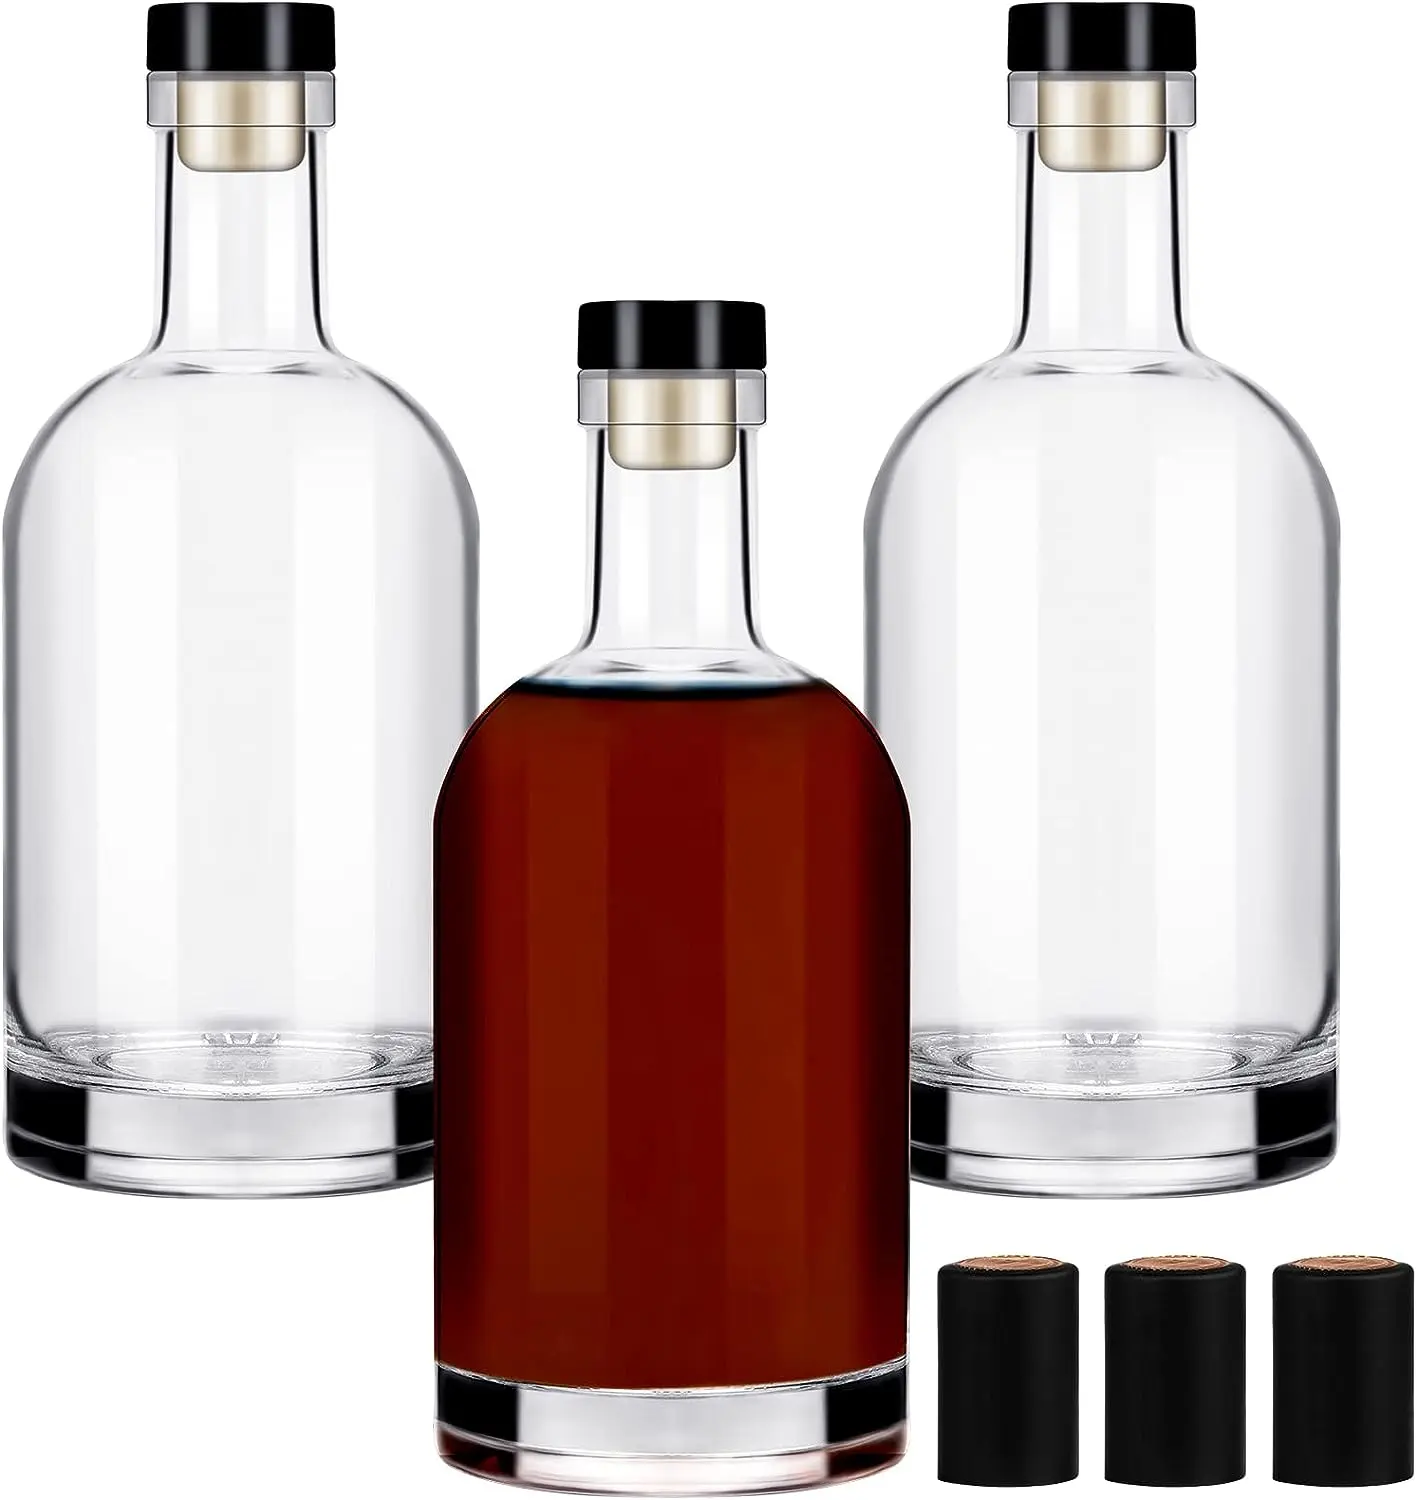 Recyclable Wholesale Custom 500ml 700ml 750ml 1000ml Empty Glass Liquor Bottle Vodka Gin Bottle With Cork Gin Glass Bottle